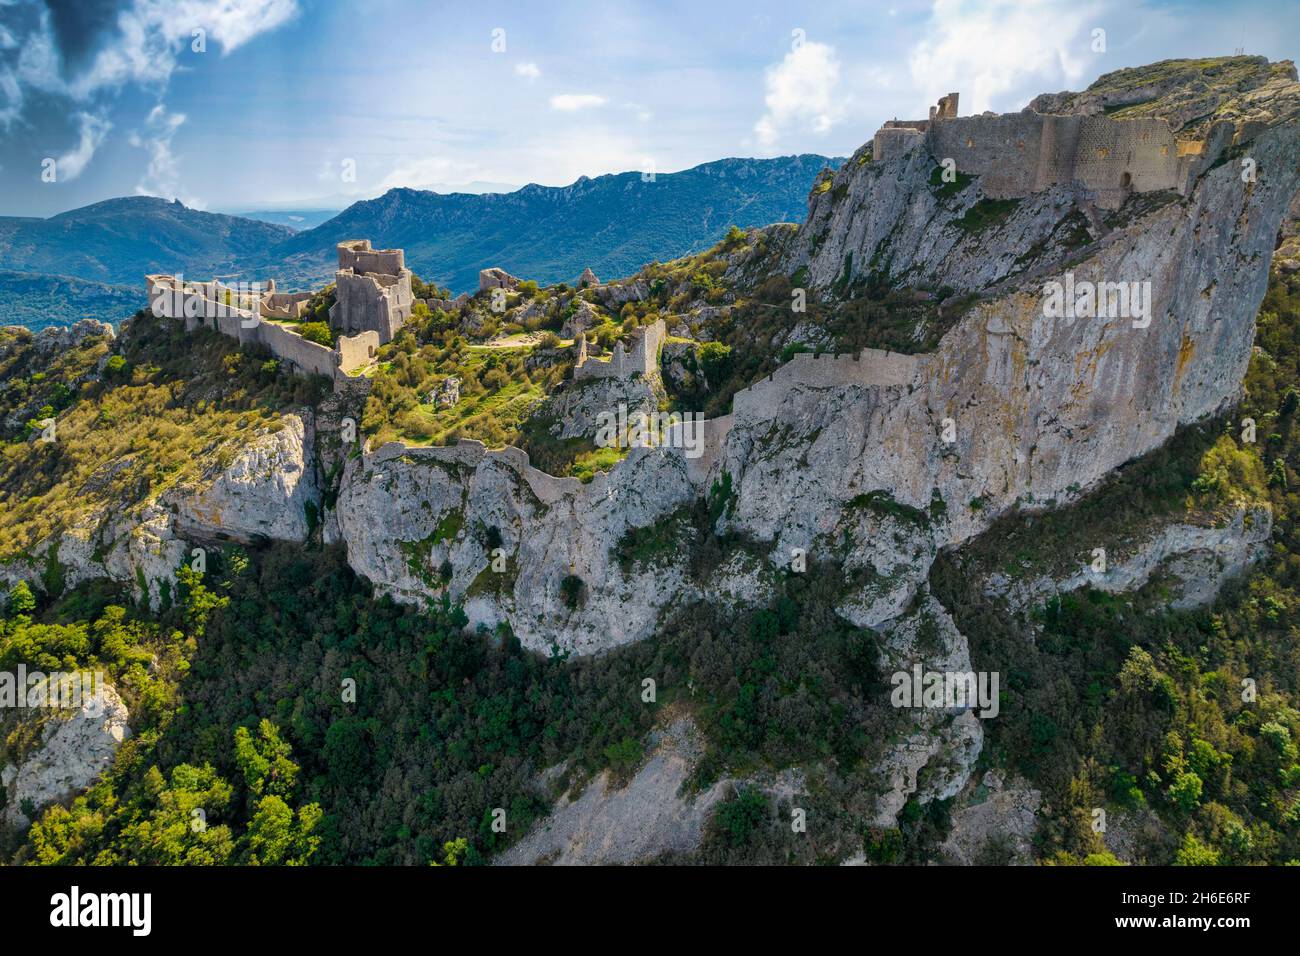 Scatto aereo del castello medievale cataro Peyrepertuse nel sud della Francia Foto Stock